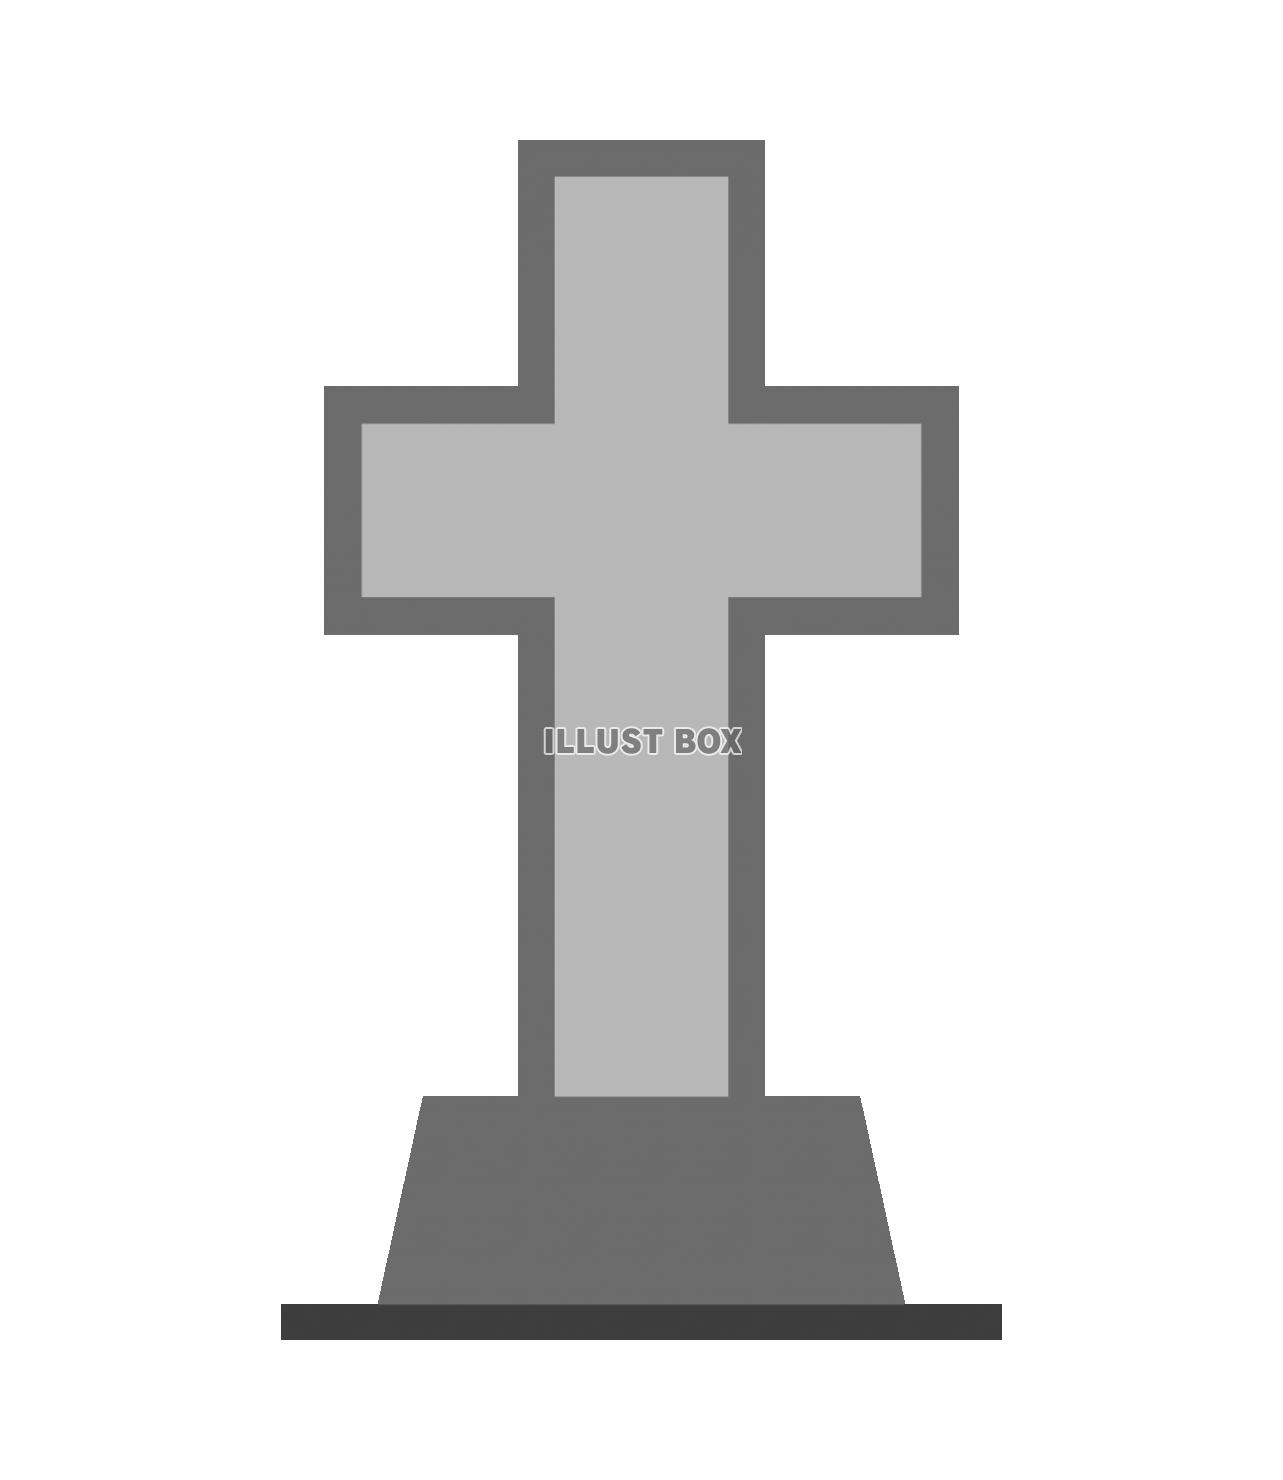 十字架の墓